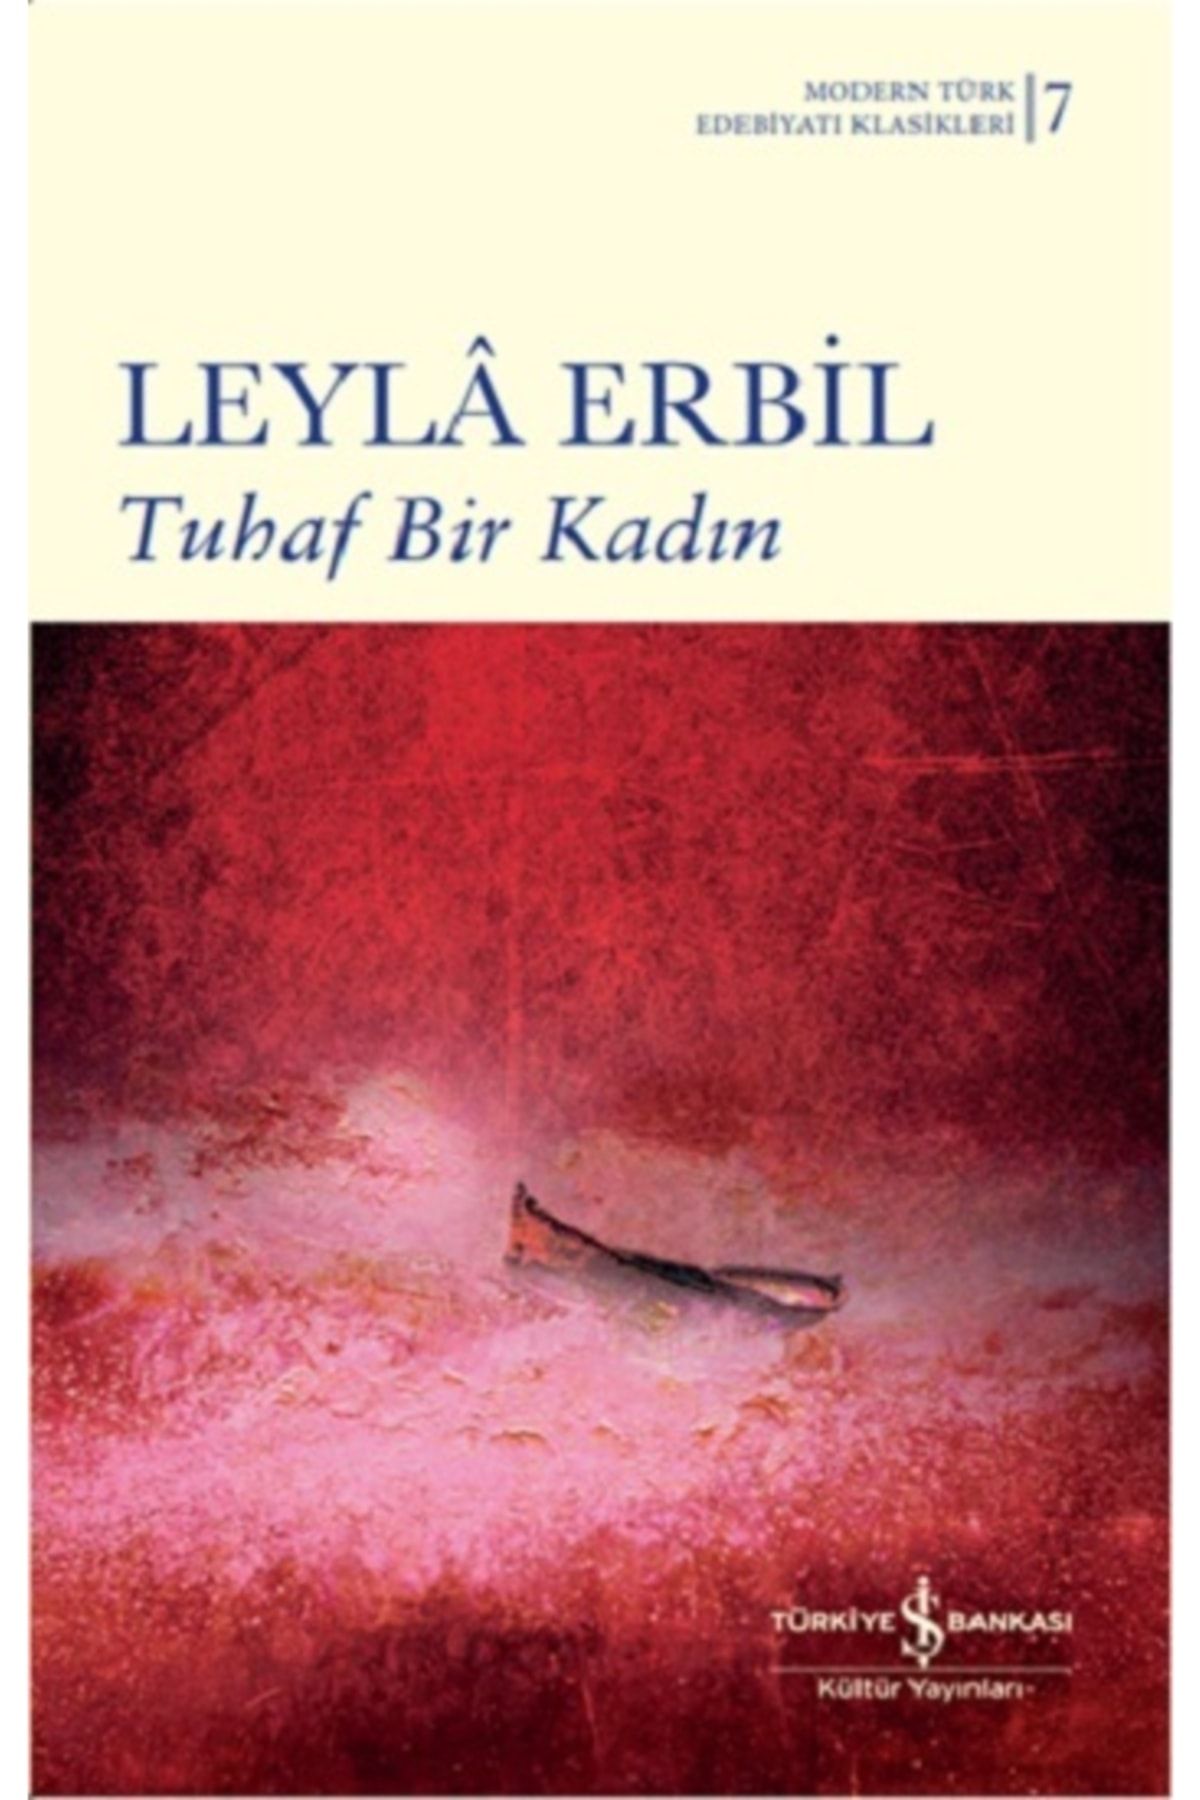 Türkiye İş Bankası Kültür Yayınları Tuhaf Bir Kadın - Leyla Erbil